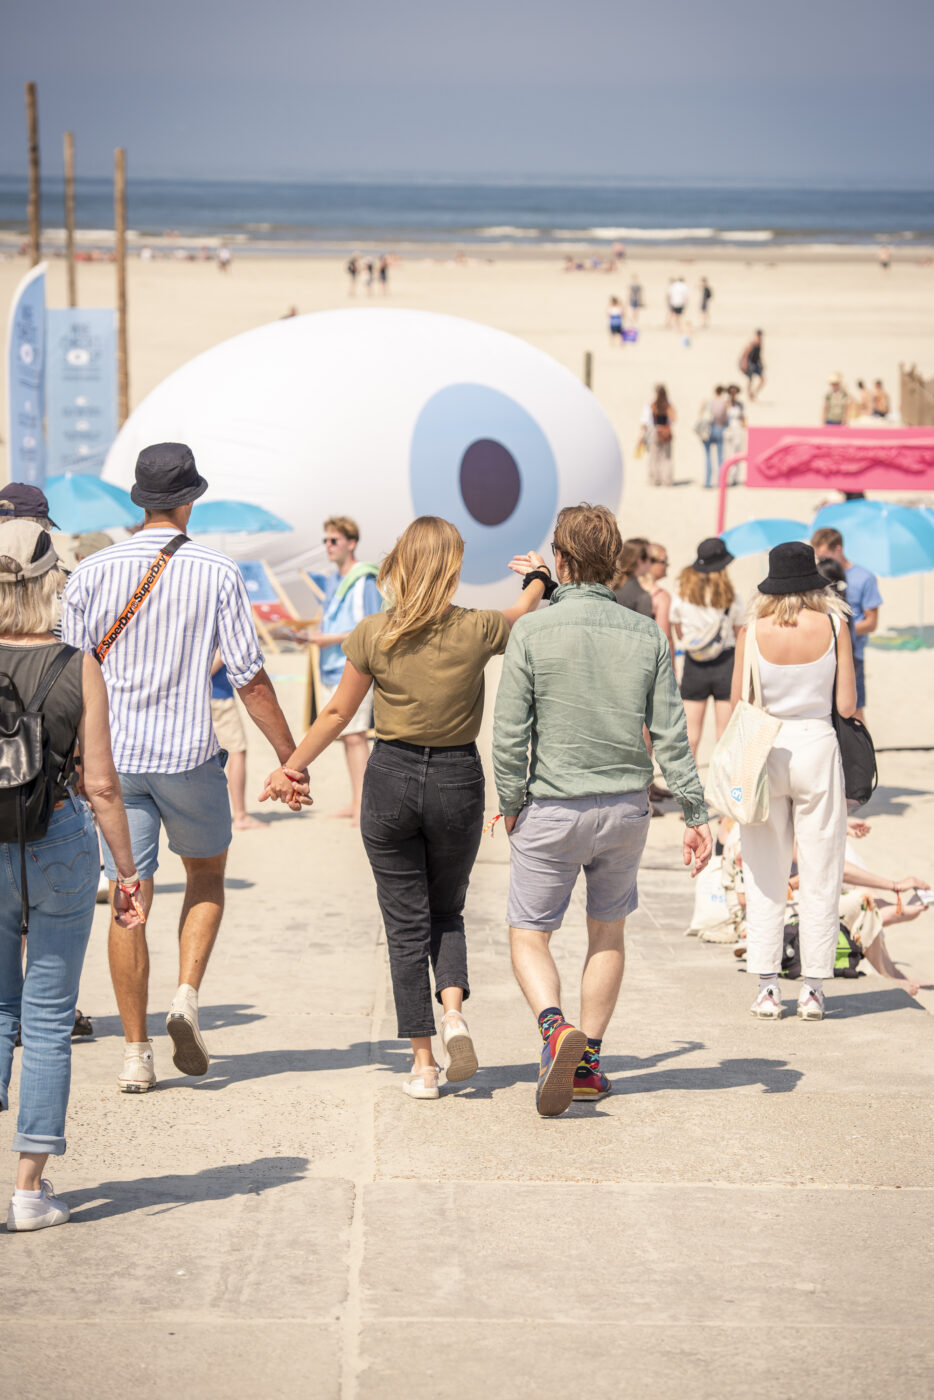 Mensen lopen het strand op met op de achtergrond een opblaasoog, beeldmerk van de Wie checkt jou campagne van KNRM Nederland tijdens Oerol 2023